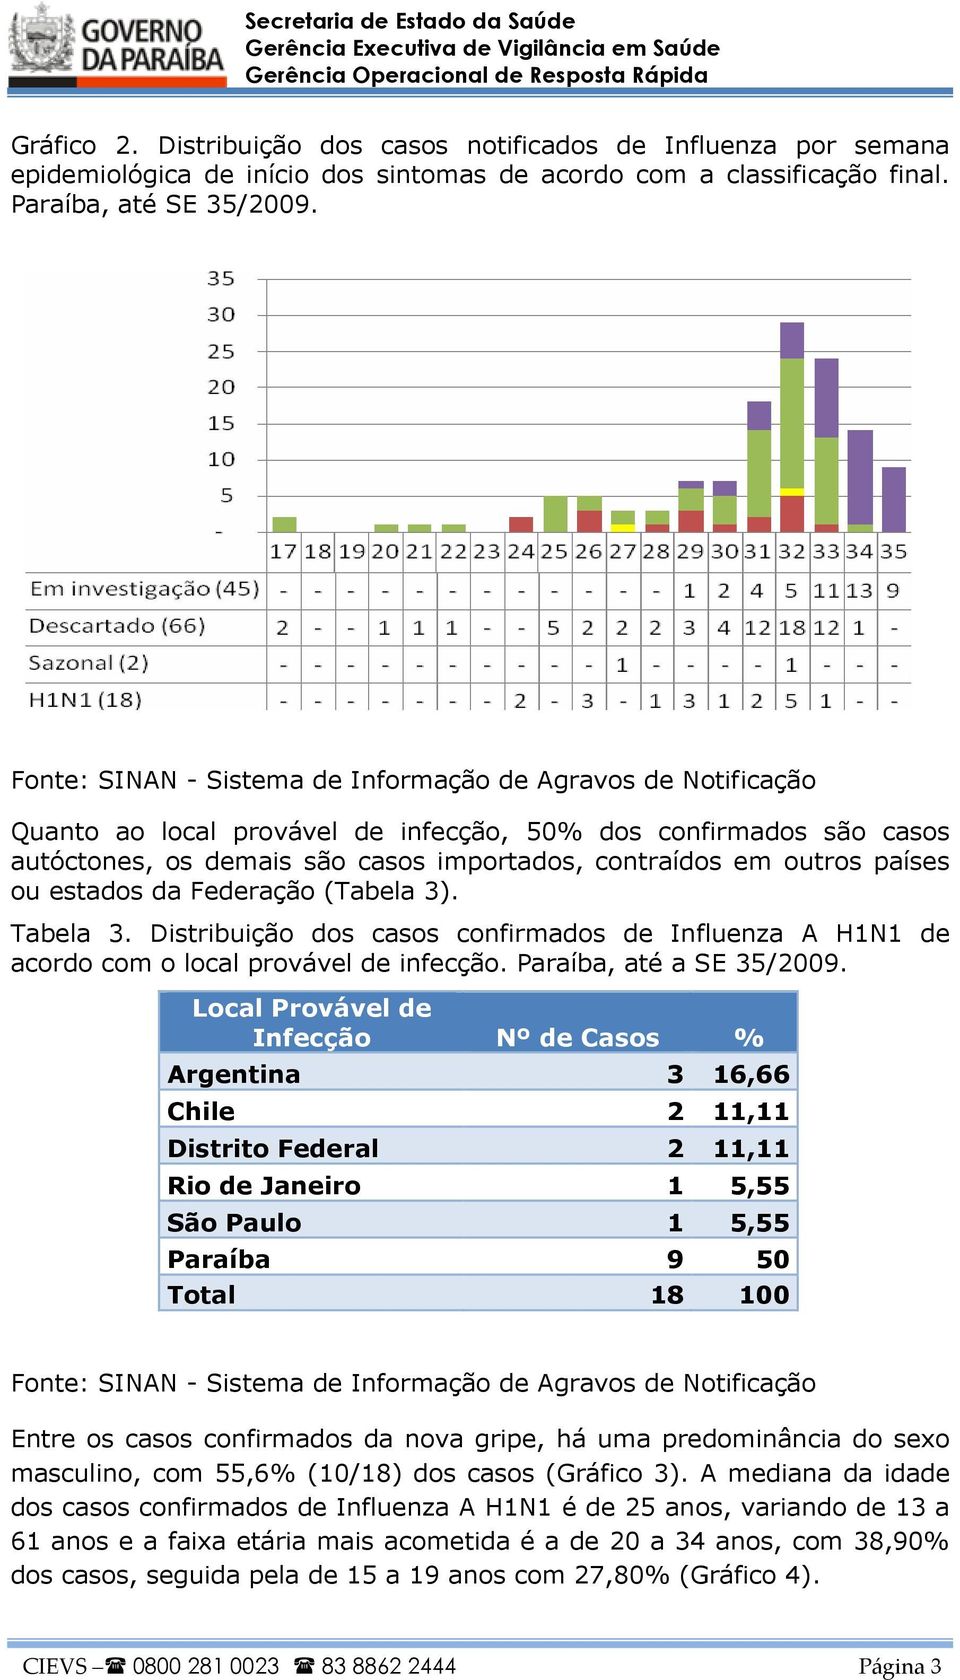 Distribuição dos casos confirmados de Influenza A H1N1 de acordo com o local provável de infecção. Paraíba, até a SE 35/2009.